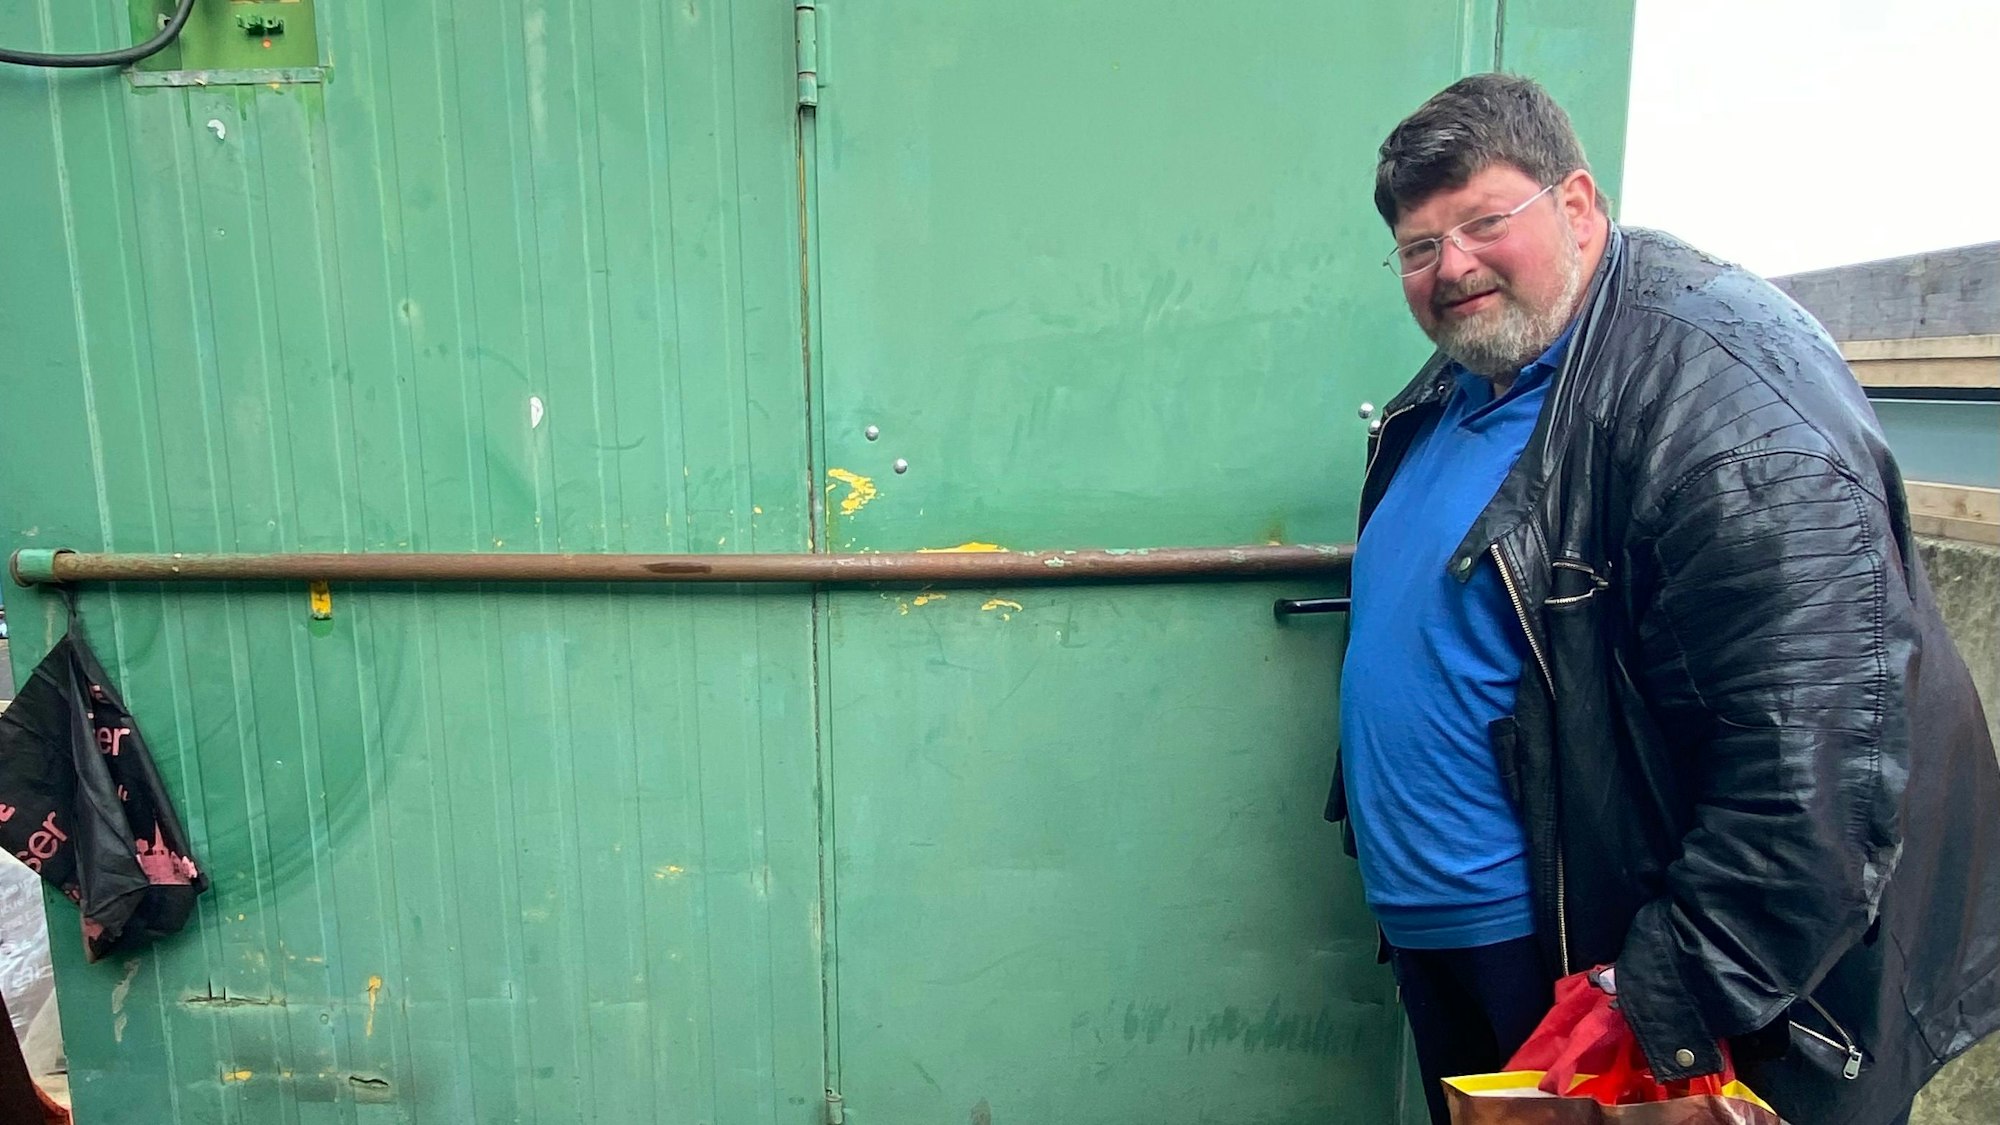 Klaus Berg an der Tür zu seinem Zuhause, er schaut in die Kamera, hinter sich eine grüne Containerwand.